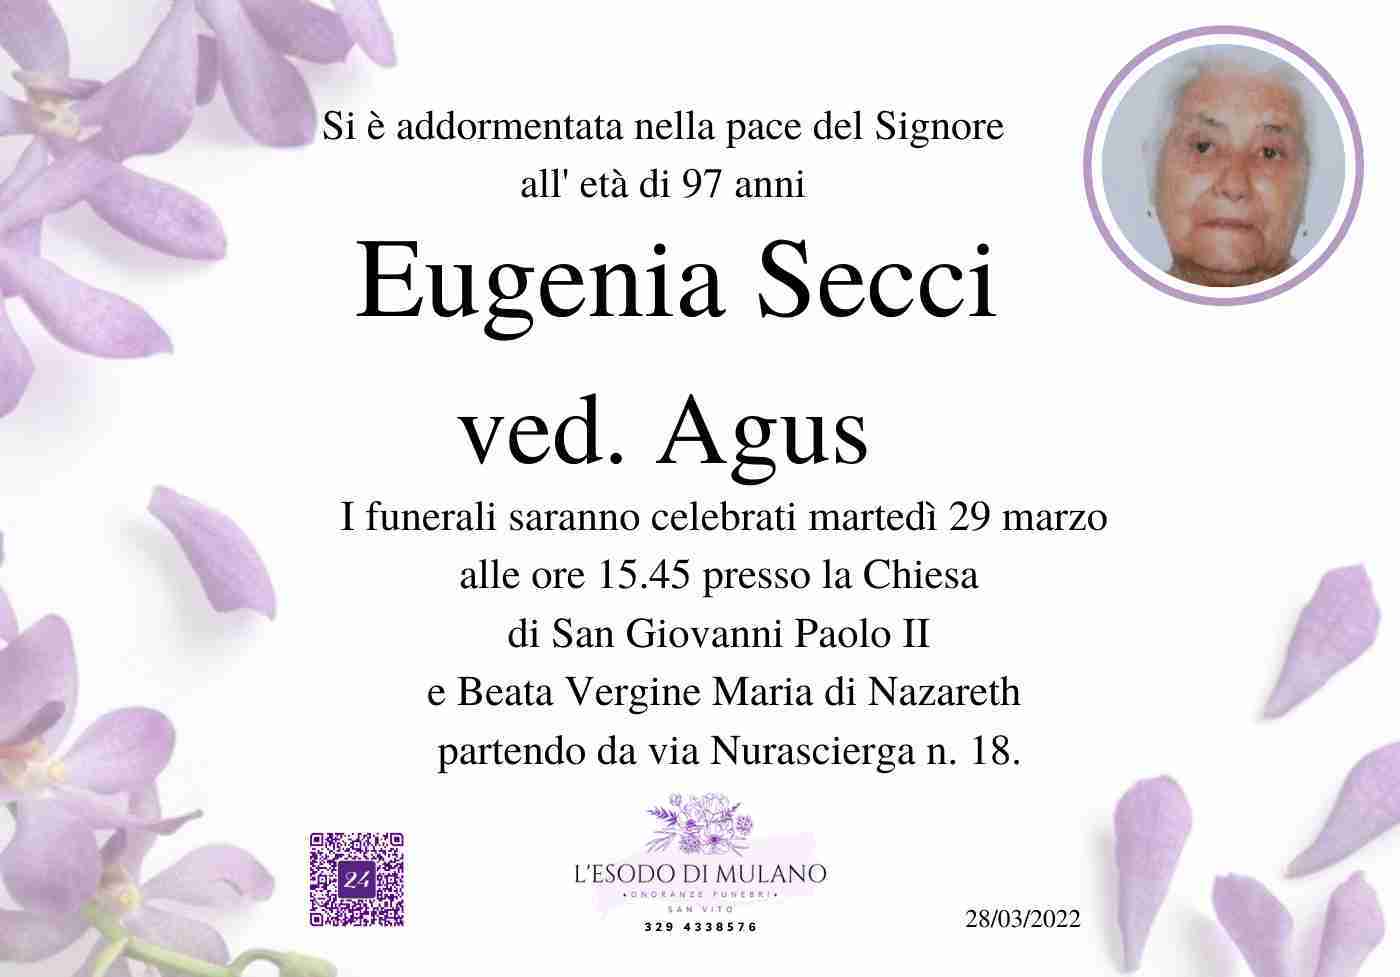 Eugenia Secci